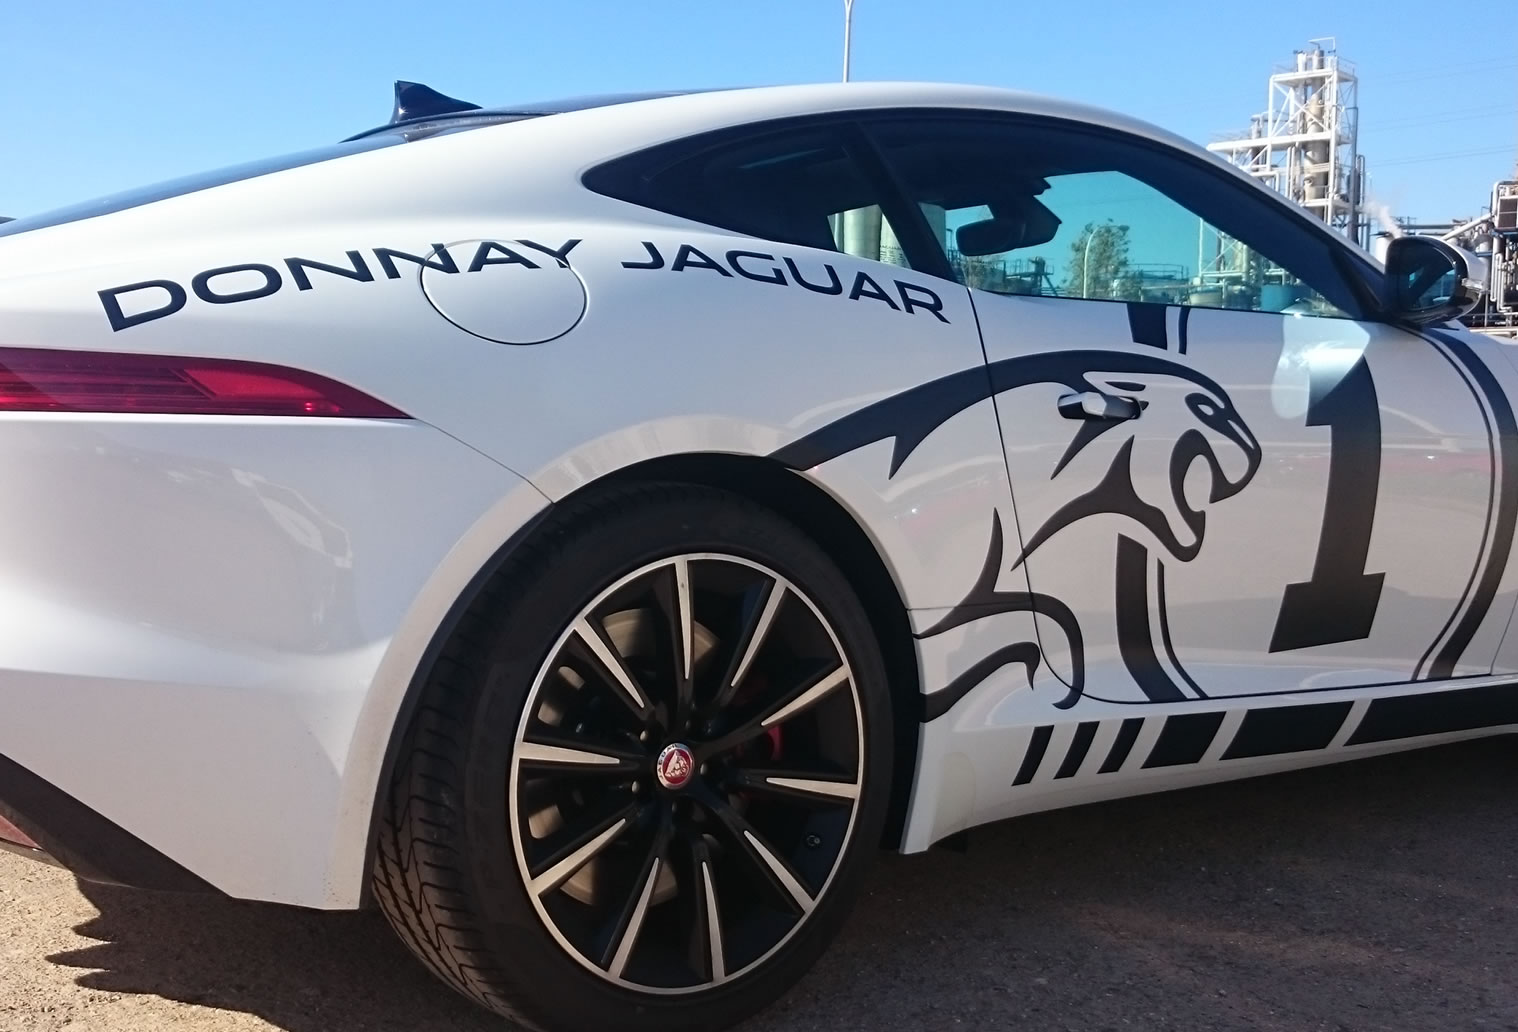 Donnay Jaguar